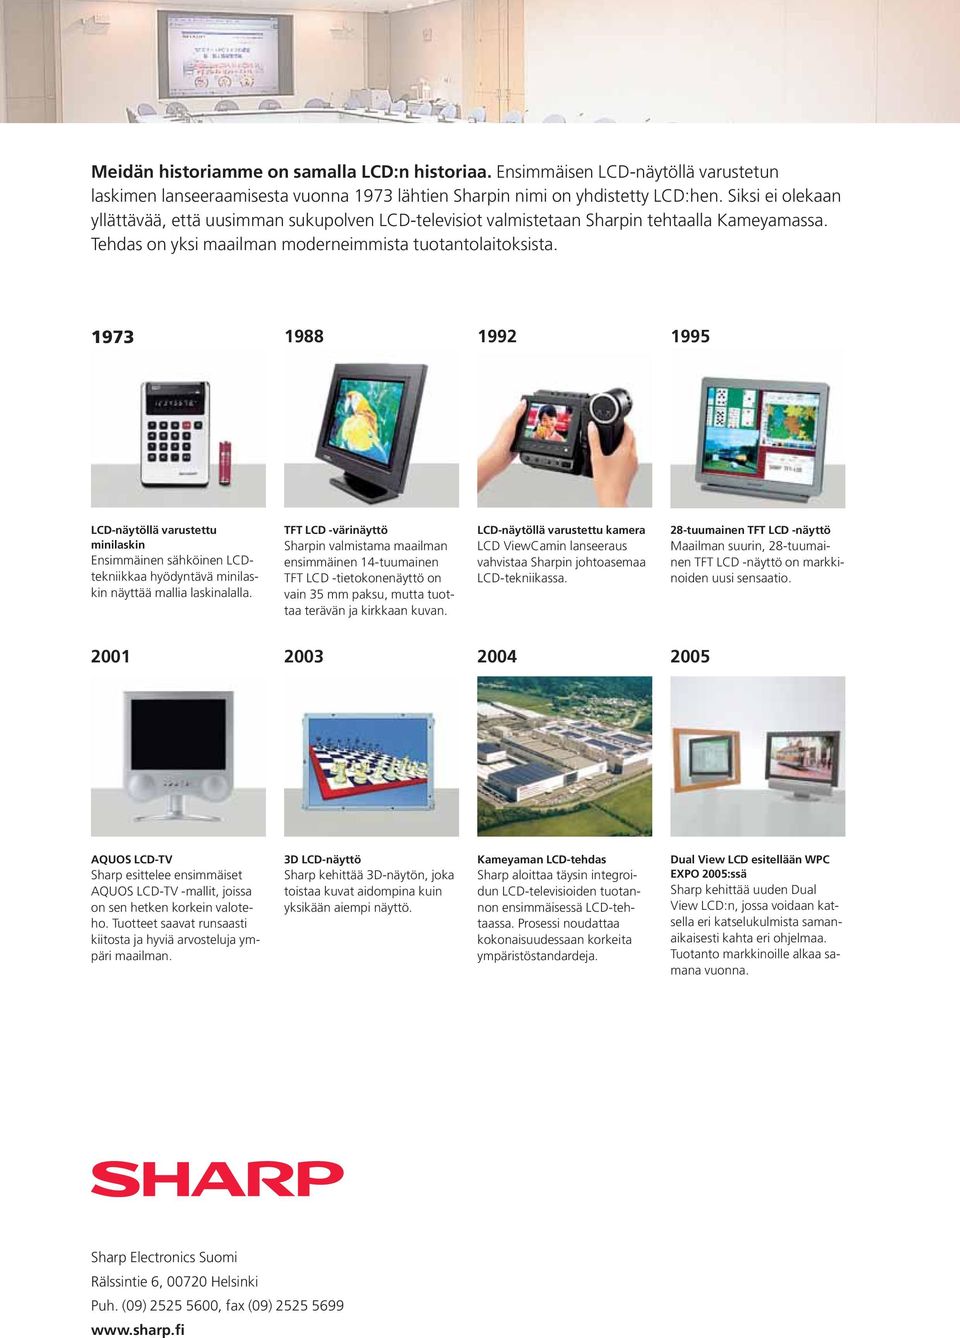 1973 1988 1992 1995 LCD-näytöllä varustettu minilaskin Ensimmäinen sähköinen LCDtekniikkaa hyödyntävä minilaskin näyttää mallia laskinalalla.